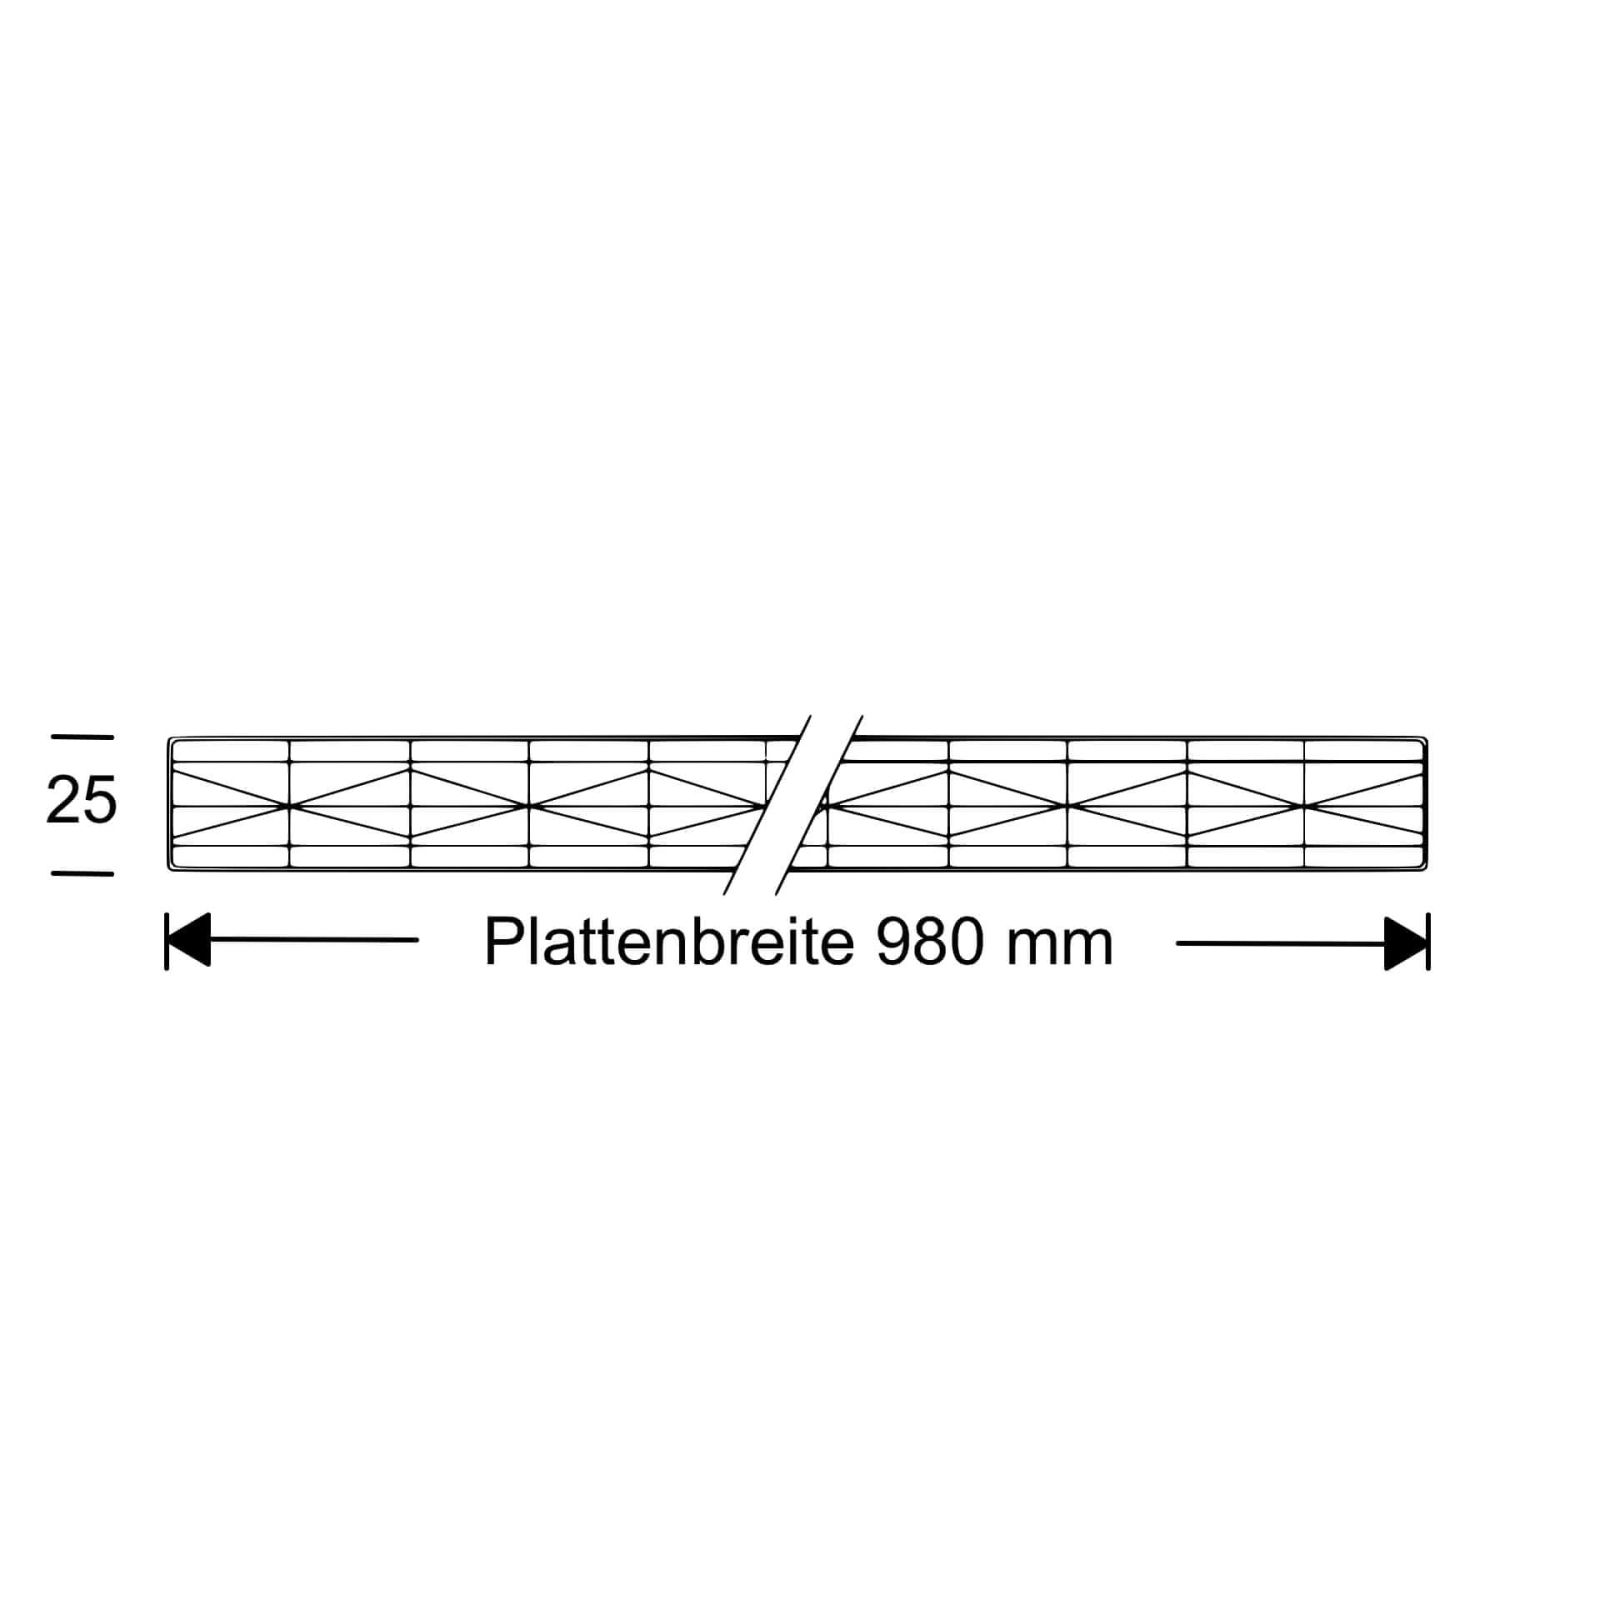 Polycarbonat Stegplatte | 25 mm | Profil Mendiger | Sparpaket | Plattenbreite 980 mm | Klar | Extra stark | Breite 3,10 m | Länge 2,00 m #10